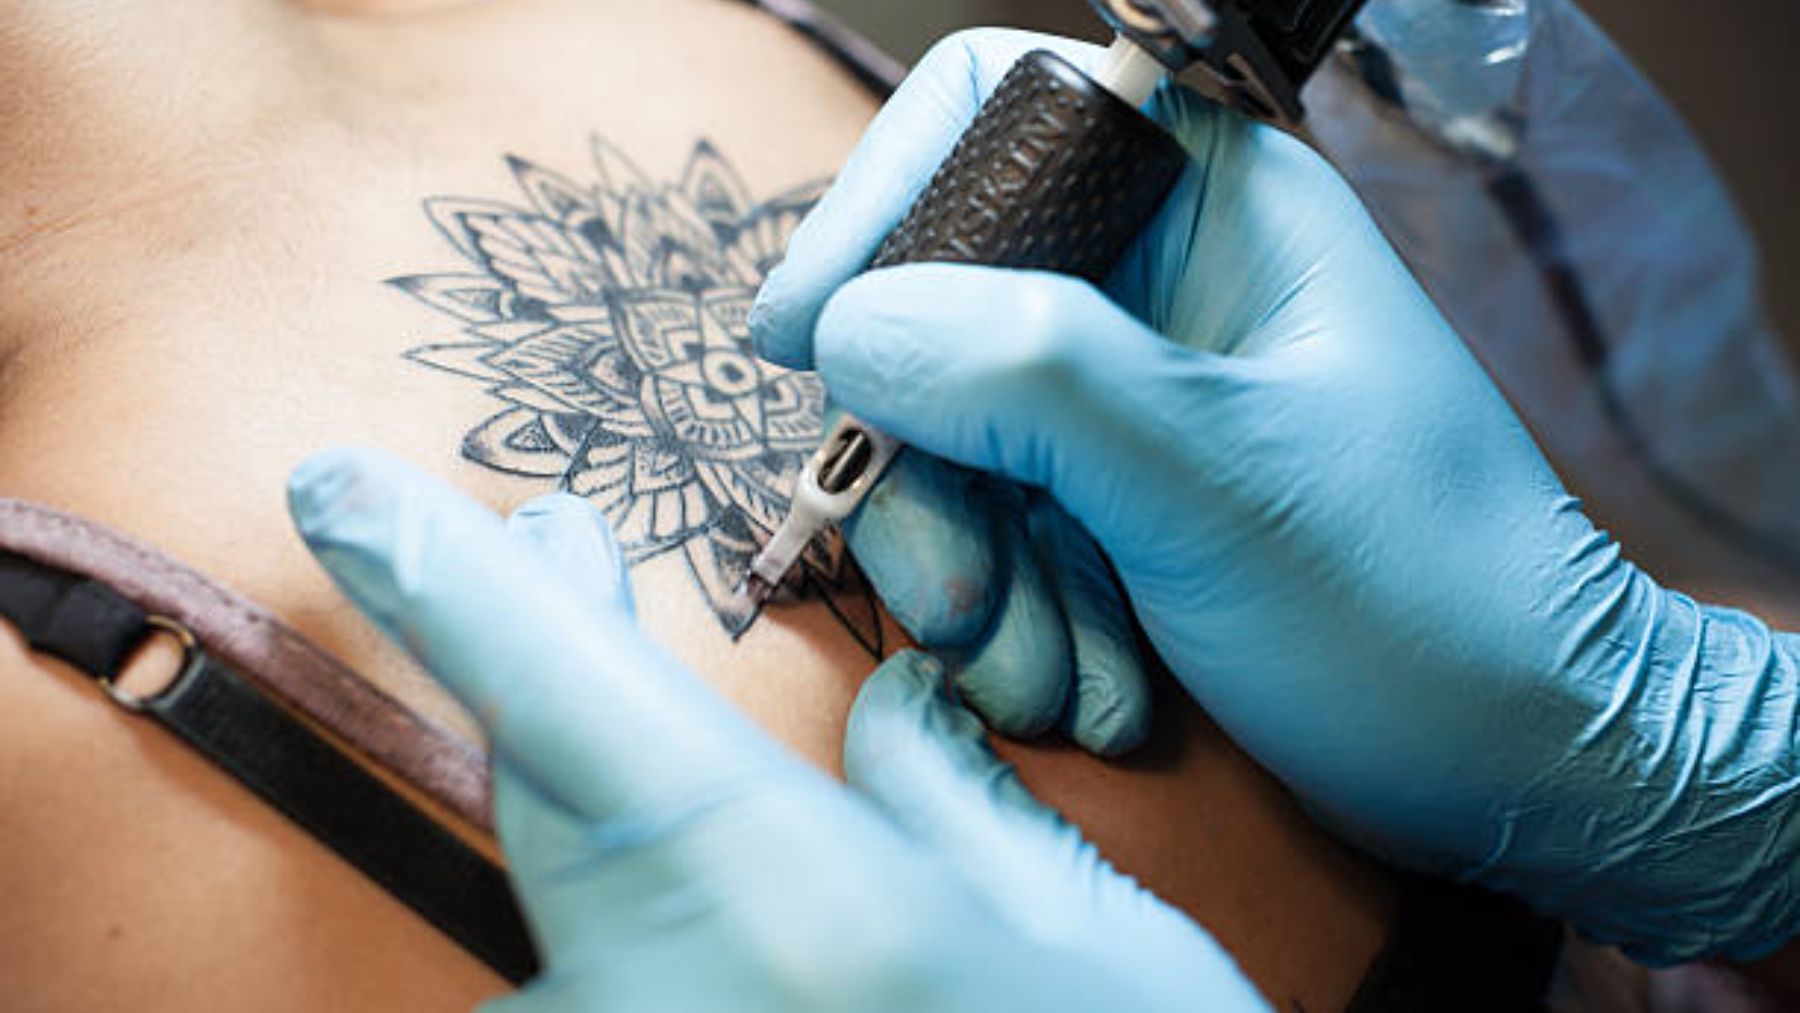 Los tatuajes ponen en riesgo tu salud. Los expertos por fin se pronuncian a esta afirmación